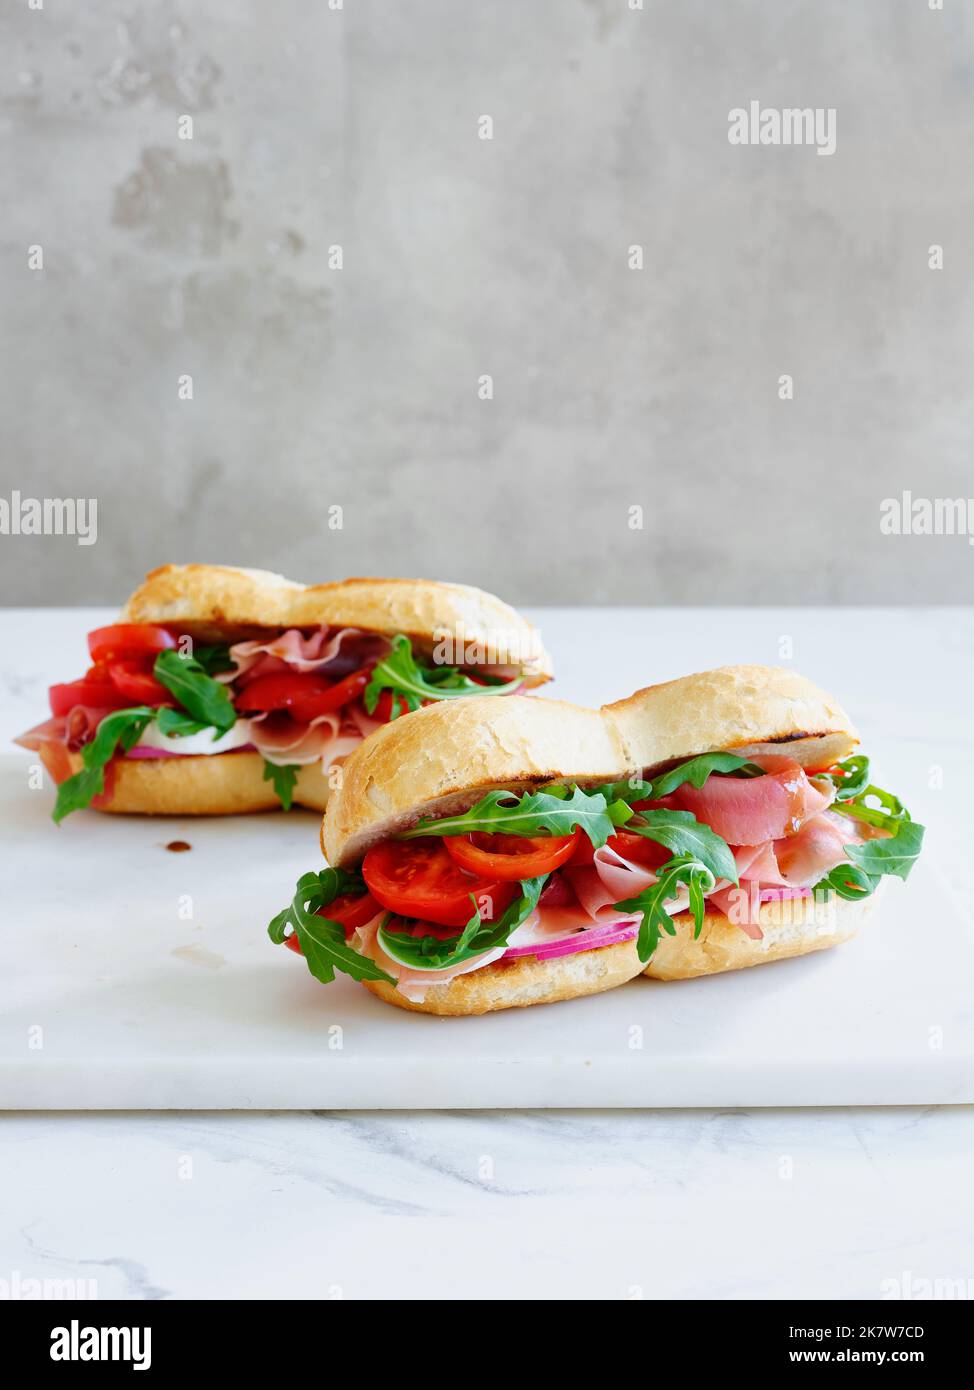 Délicieux sandwich au jambon, à la mozarella et aux légumes frais. Concept déjeuner simple. Copier l'espace Banque D'Images